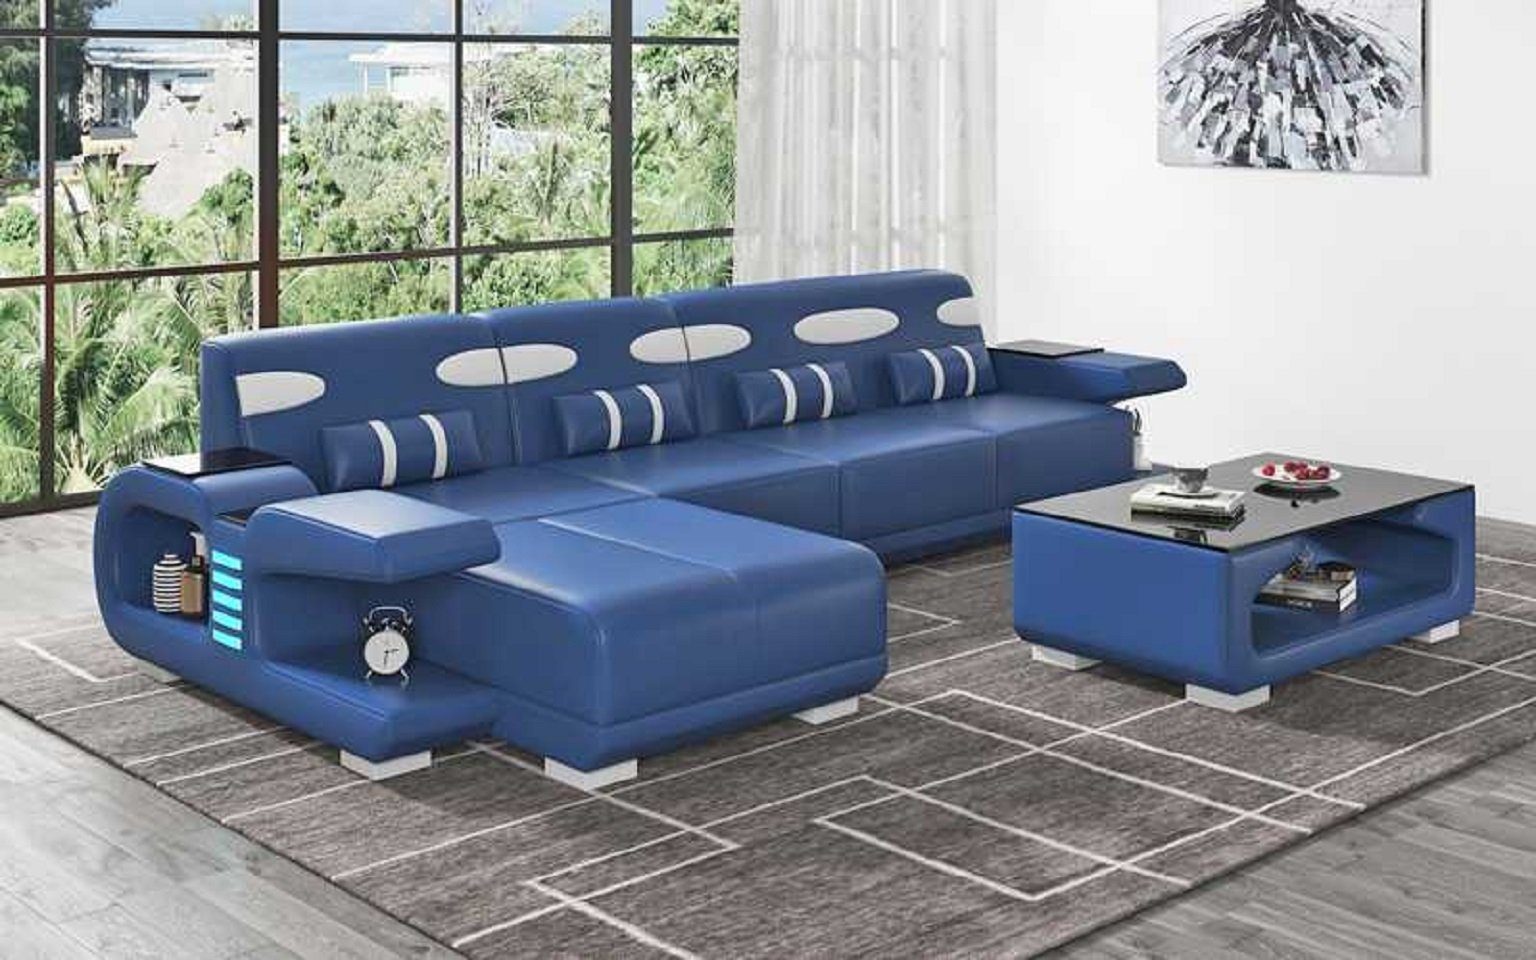 JVmoebel Ecksofa Design Ecksofa L Form Liege Modern Ledersofa Kunstleder Sofa Sofas, 3 Teile, Made in Europe Blau